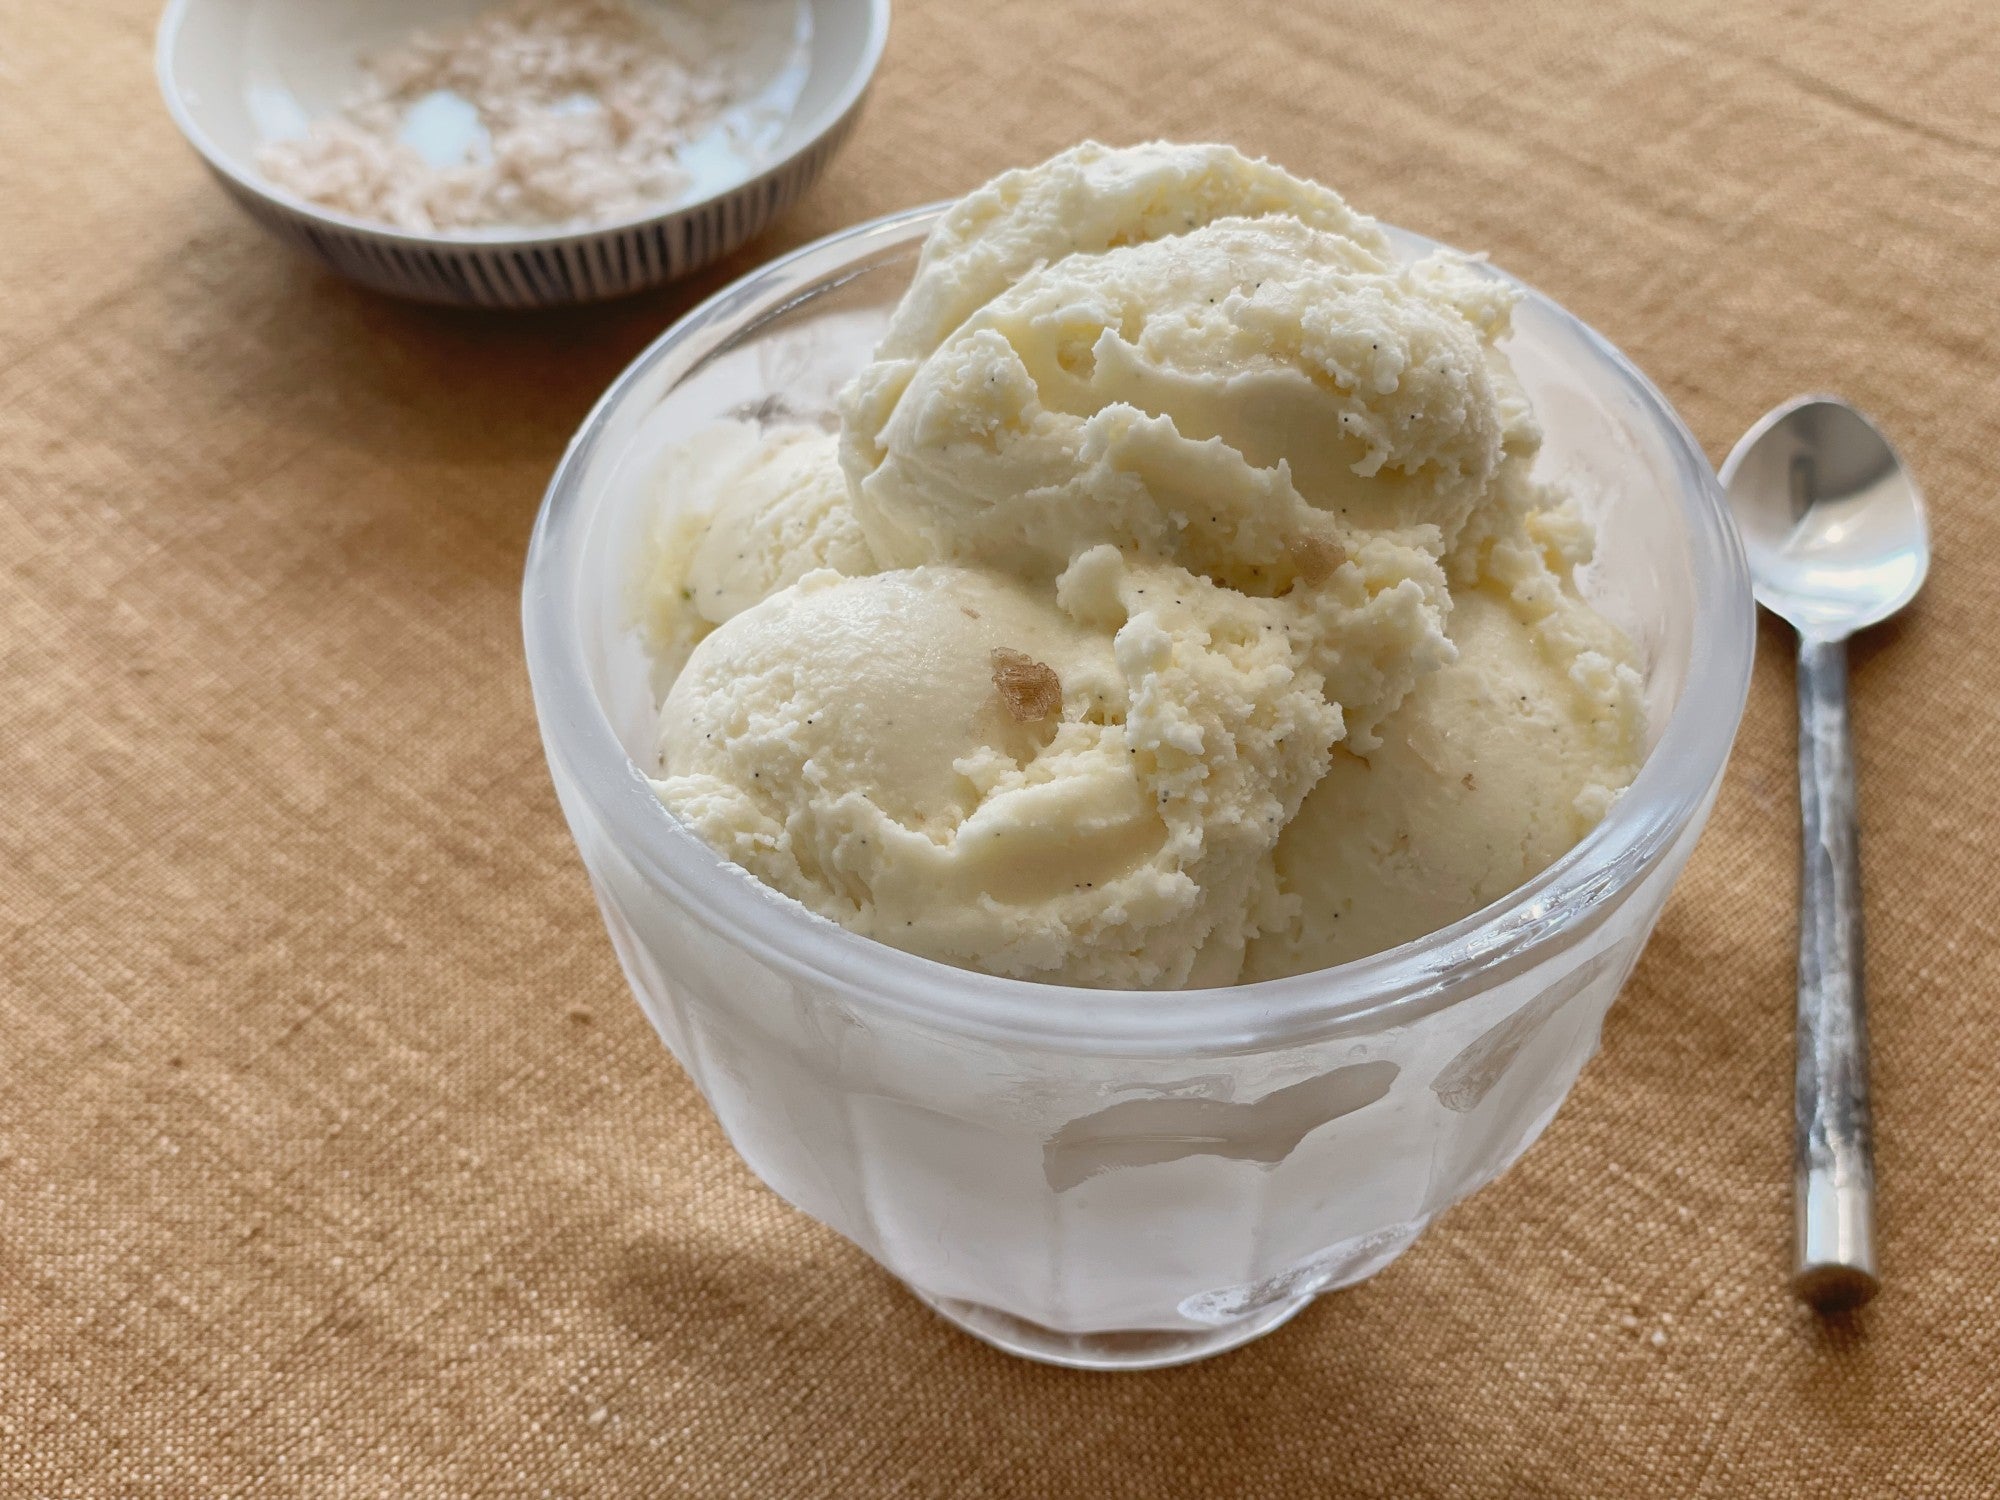 https://www.saveur.com/uploads/2021/08/20/Smoked-vanilla-ice-cream-recipe-fatima-khawaja.jpg?auto=webp